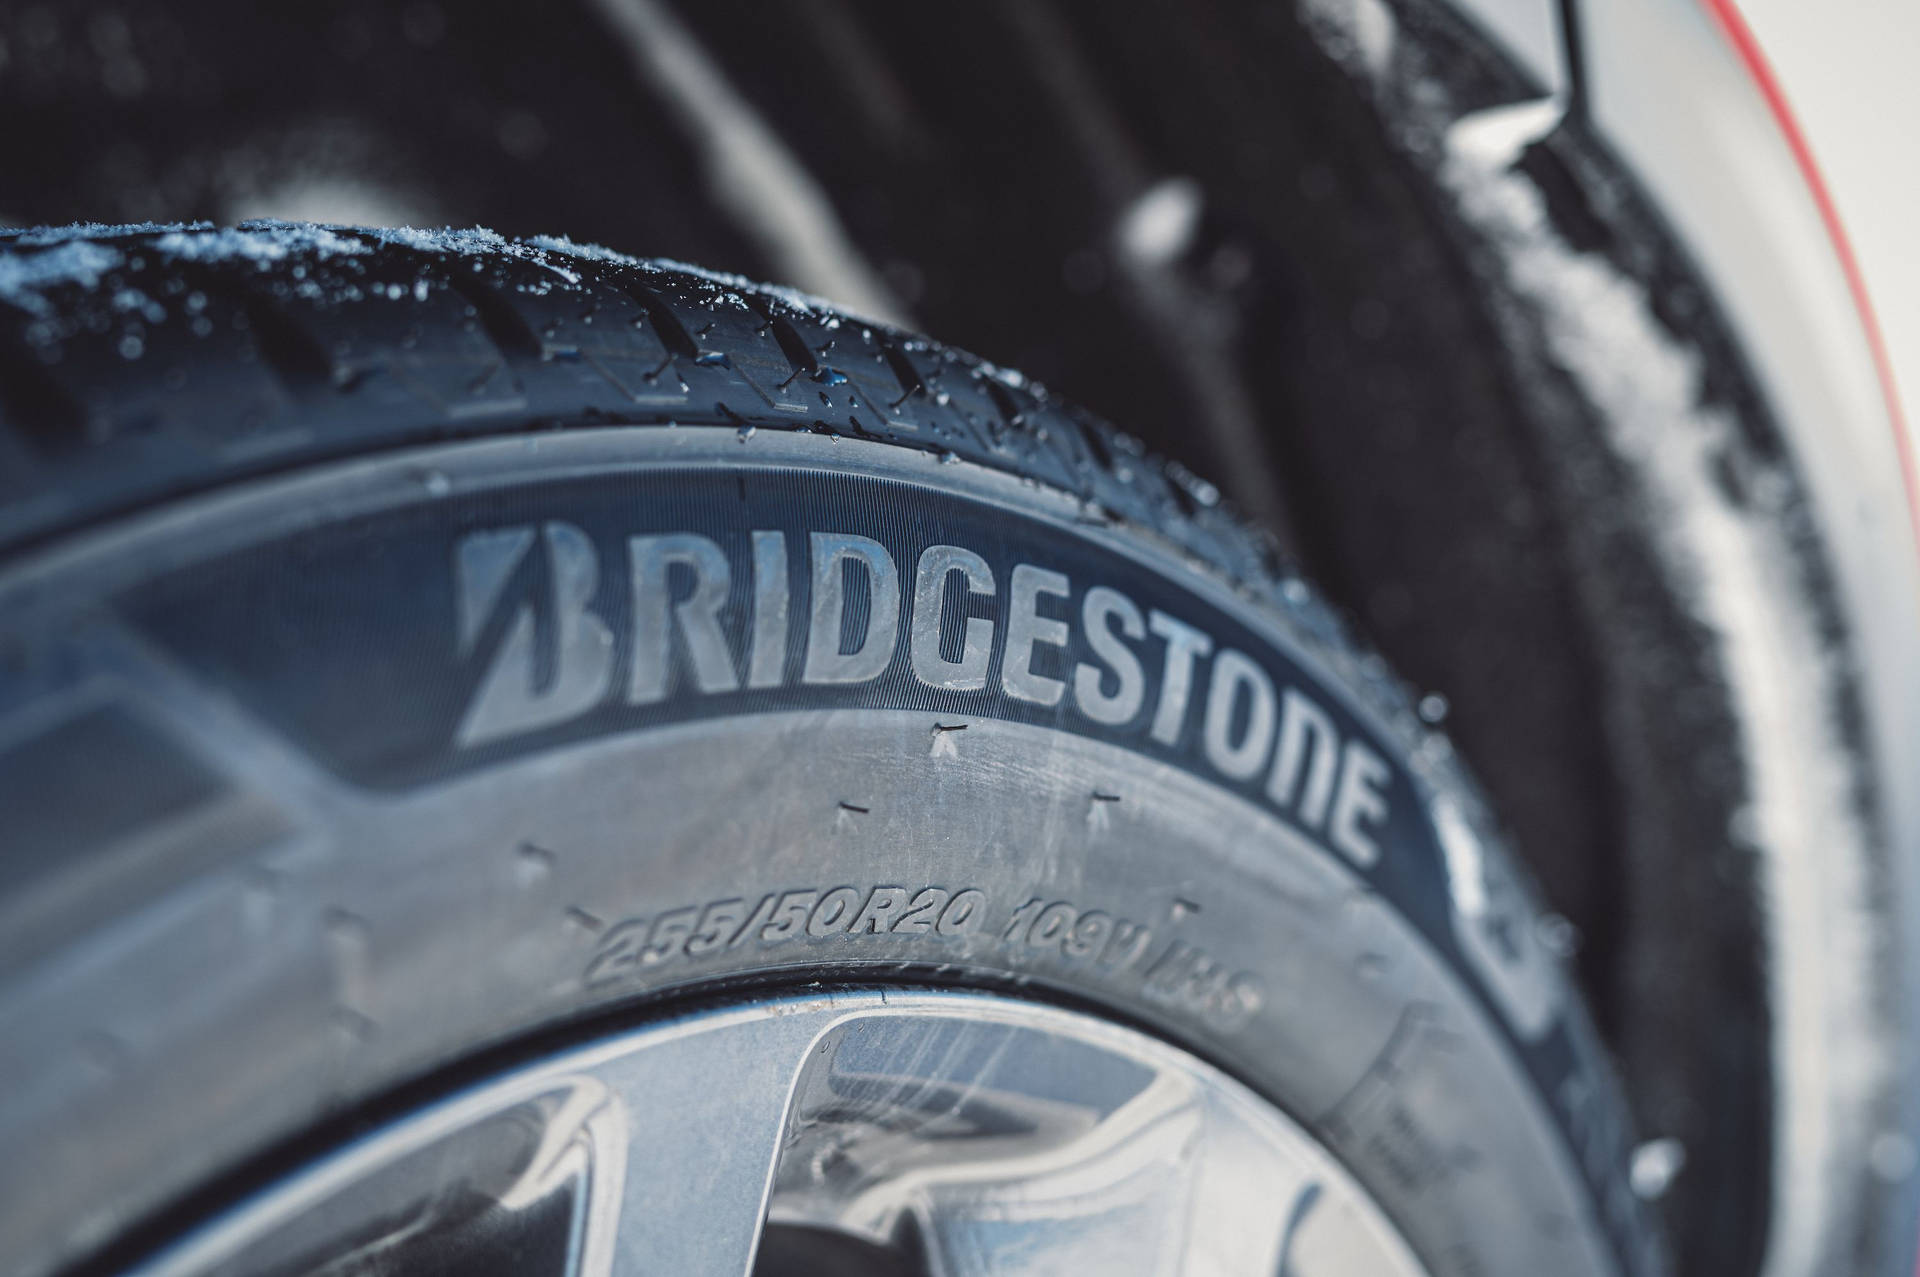 Bridgestone Tire Rubber Wallpaper